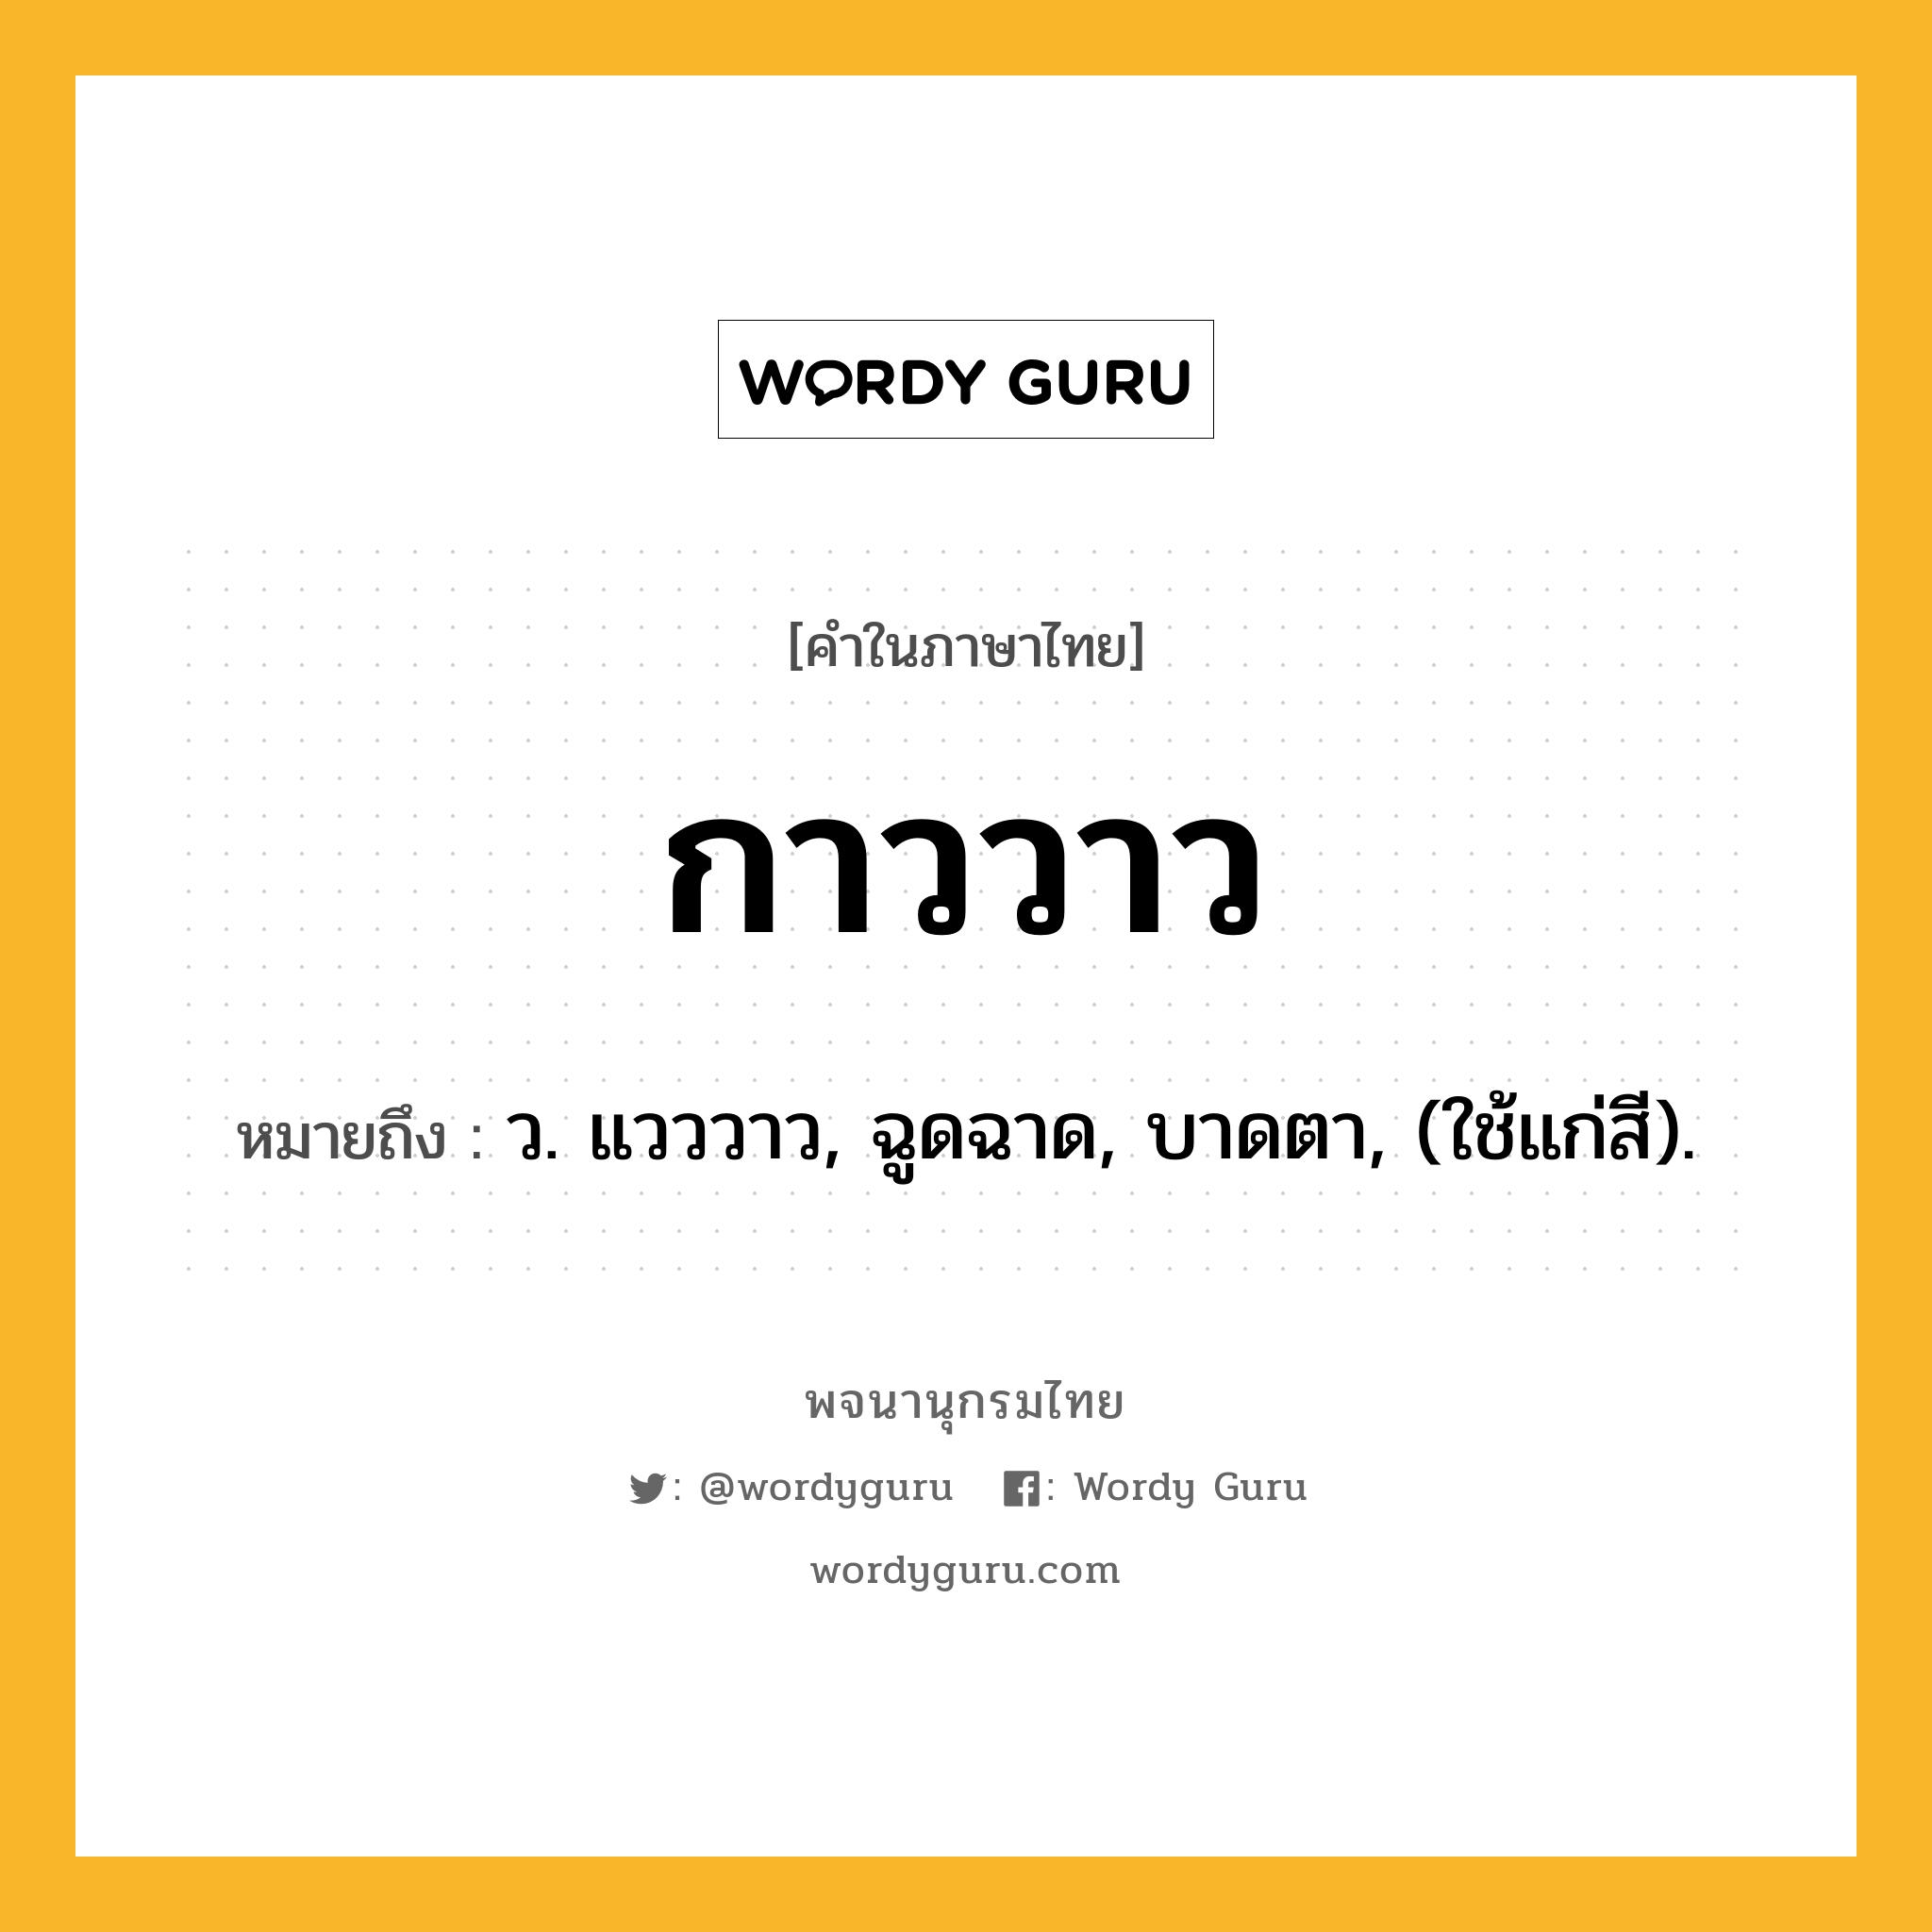 กาววาว ความหมาย หมายถึงอะไร?, คำในภาษาไทย กาววาว หมายถึง ว. แวววาว, ฉูดฉาด, บาดตา, (ใช้แก่สี).